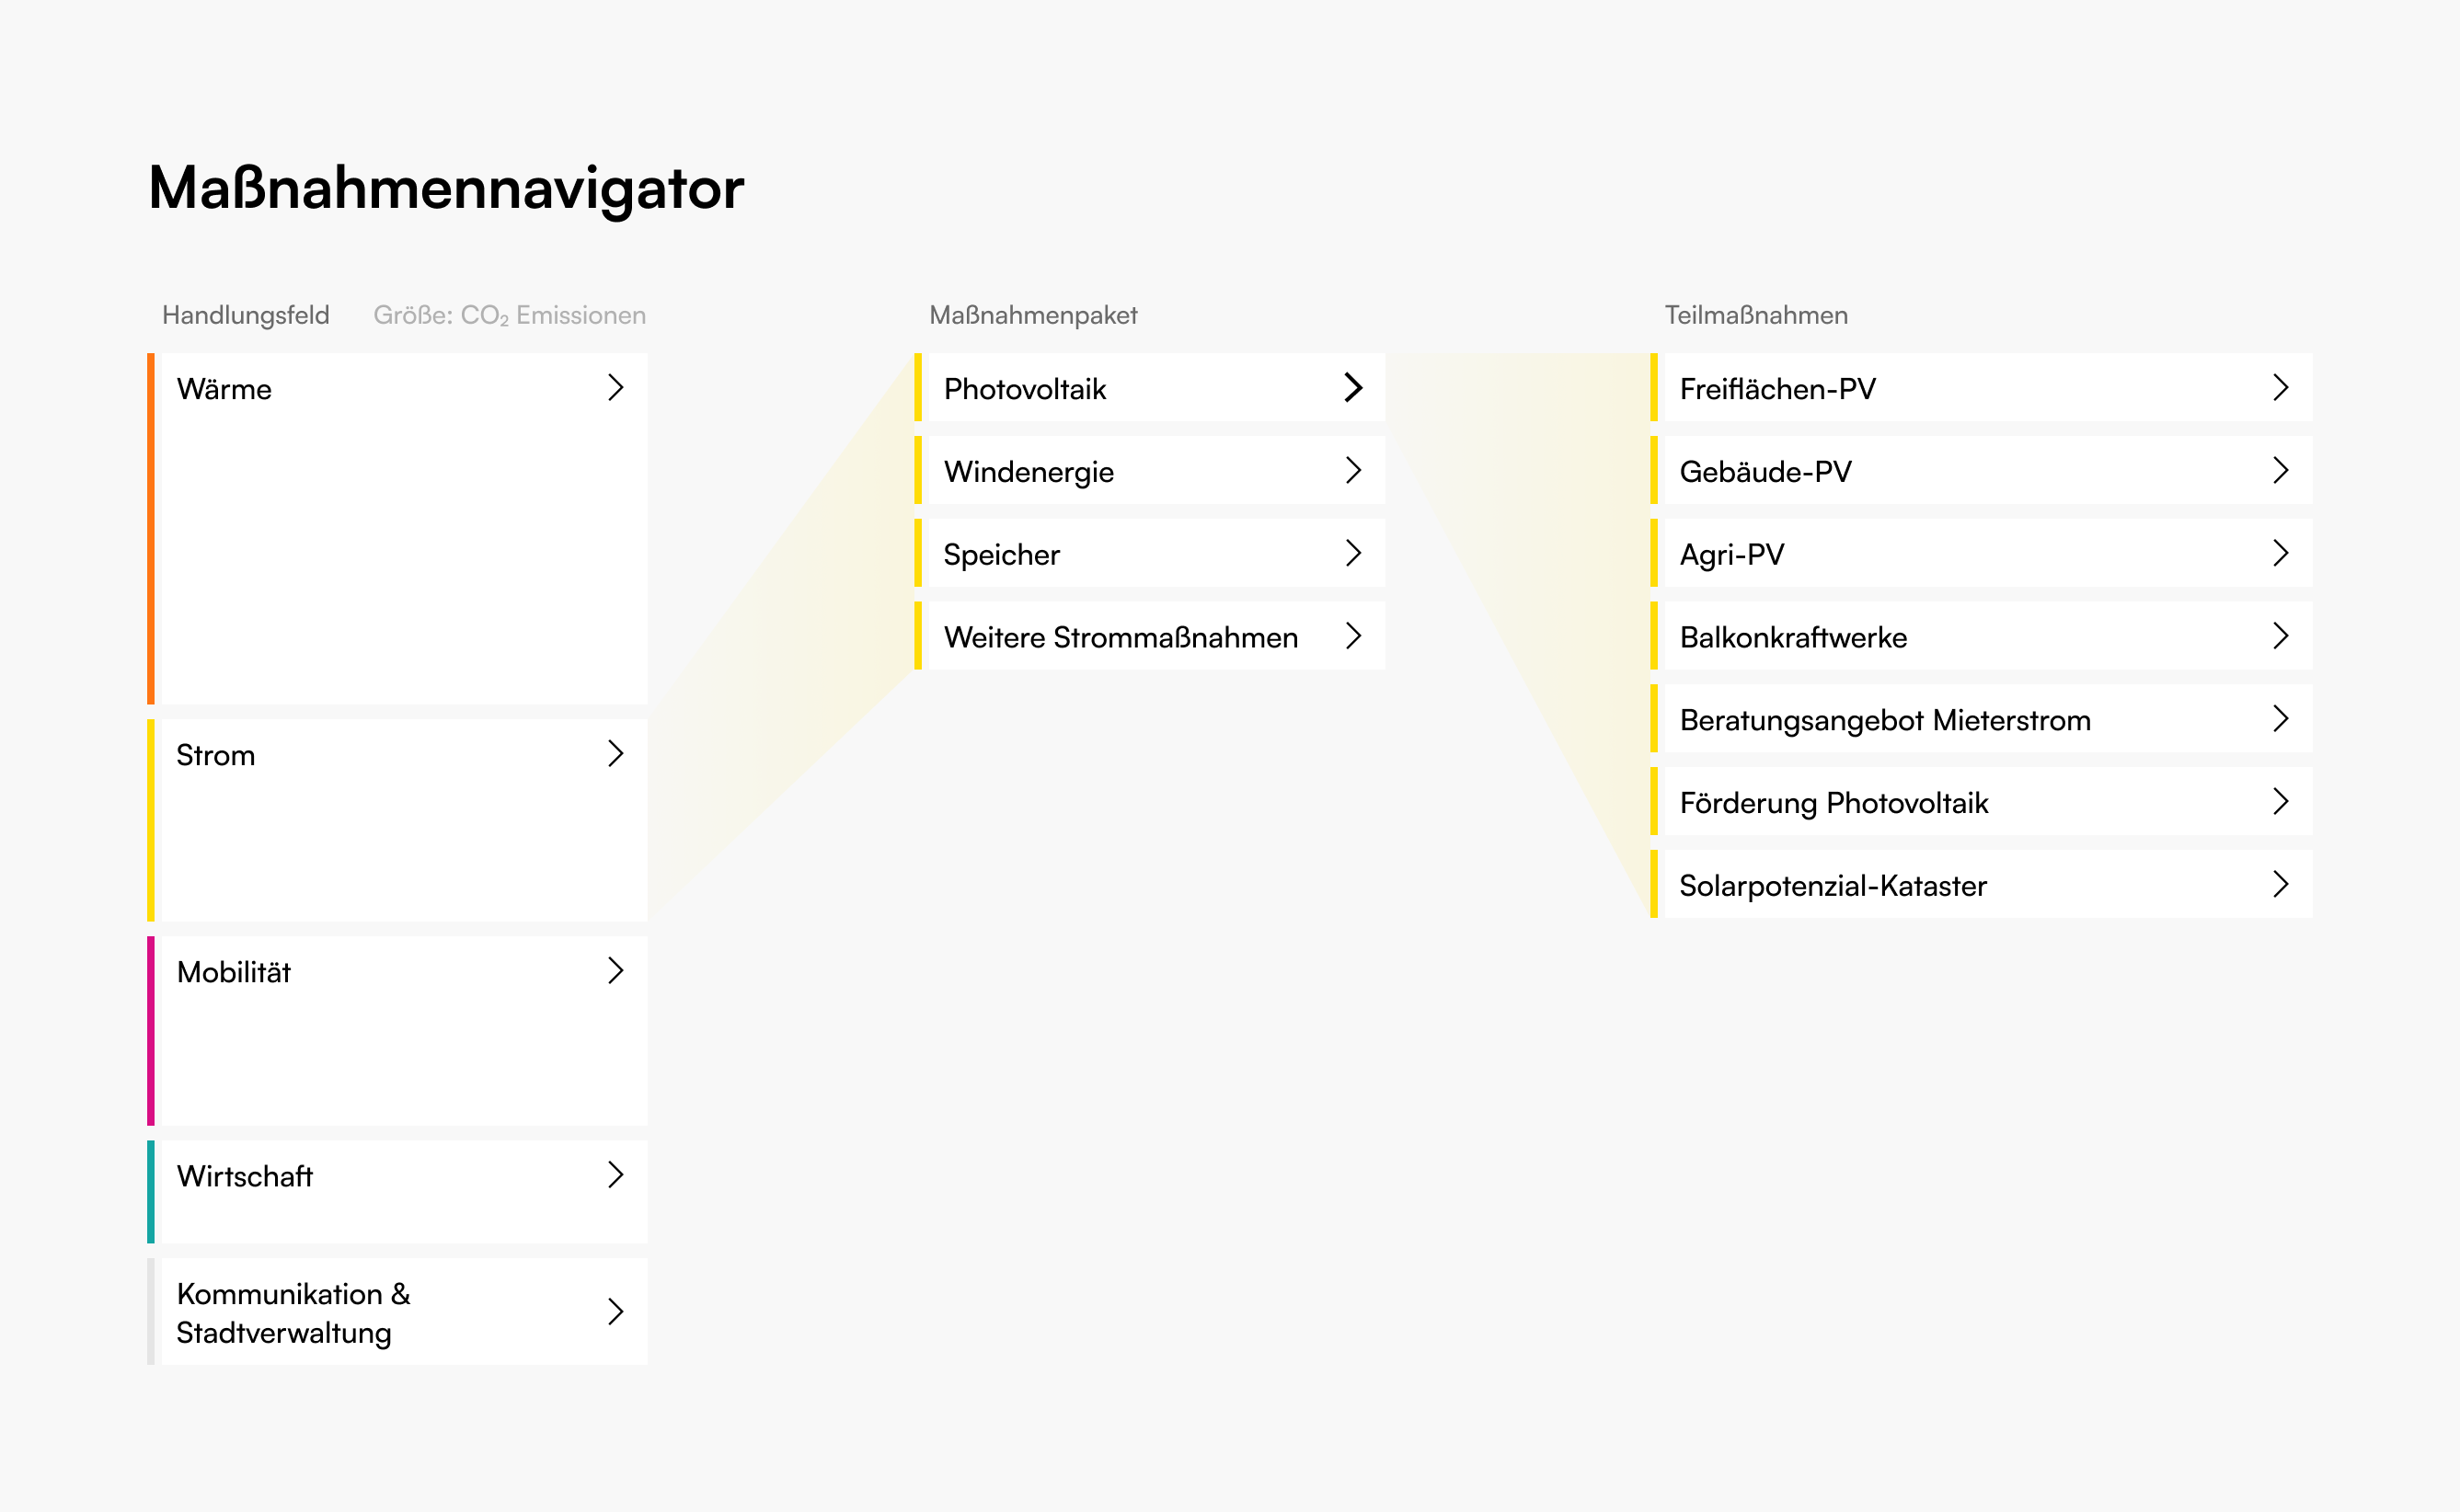 massnahmen-navigator-desktop